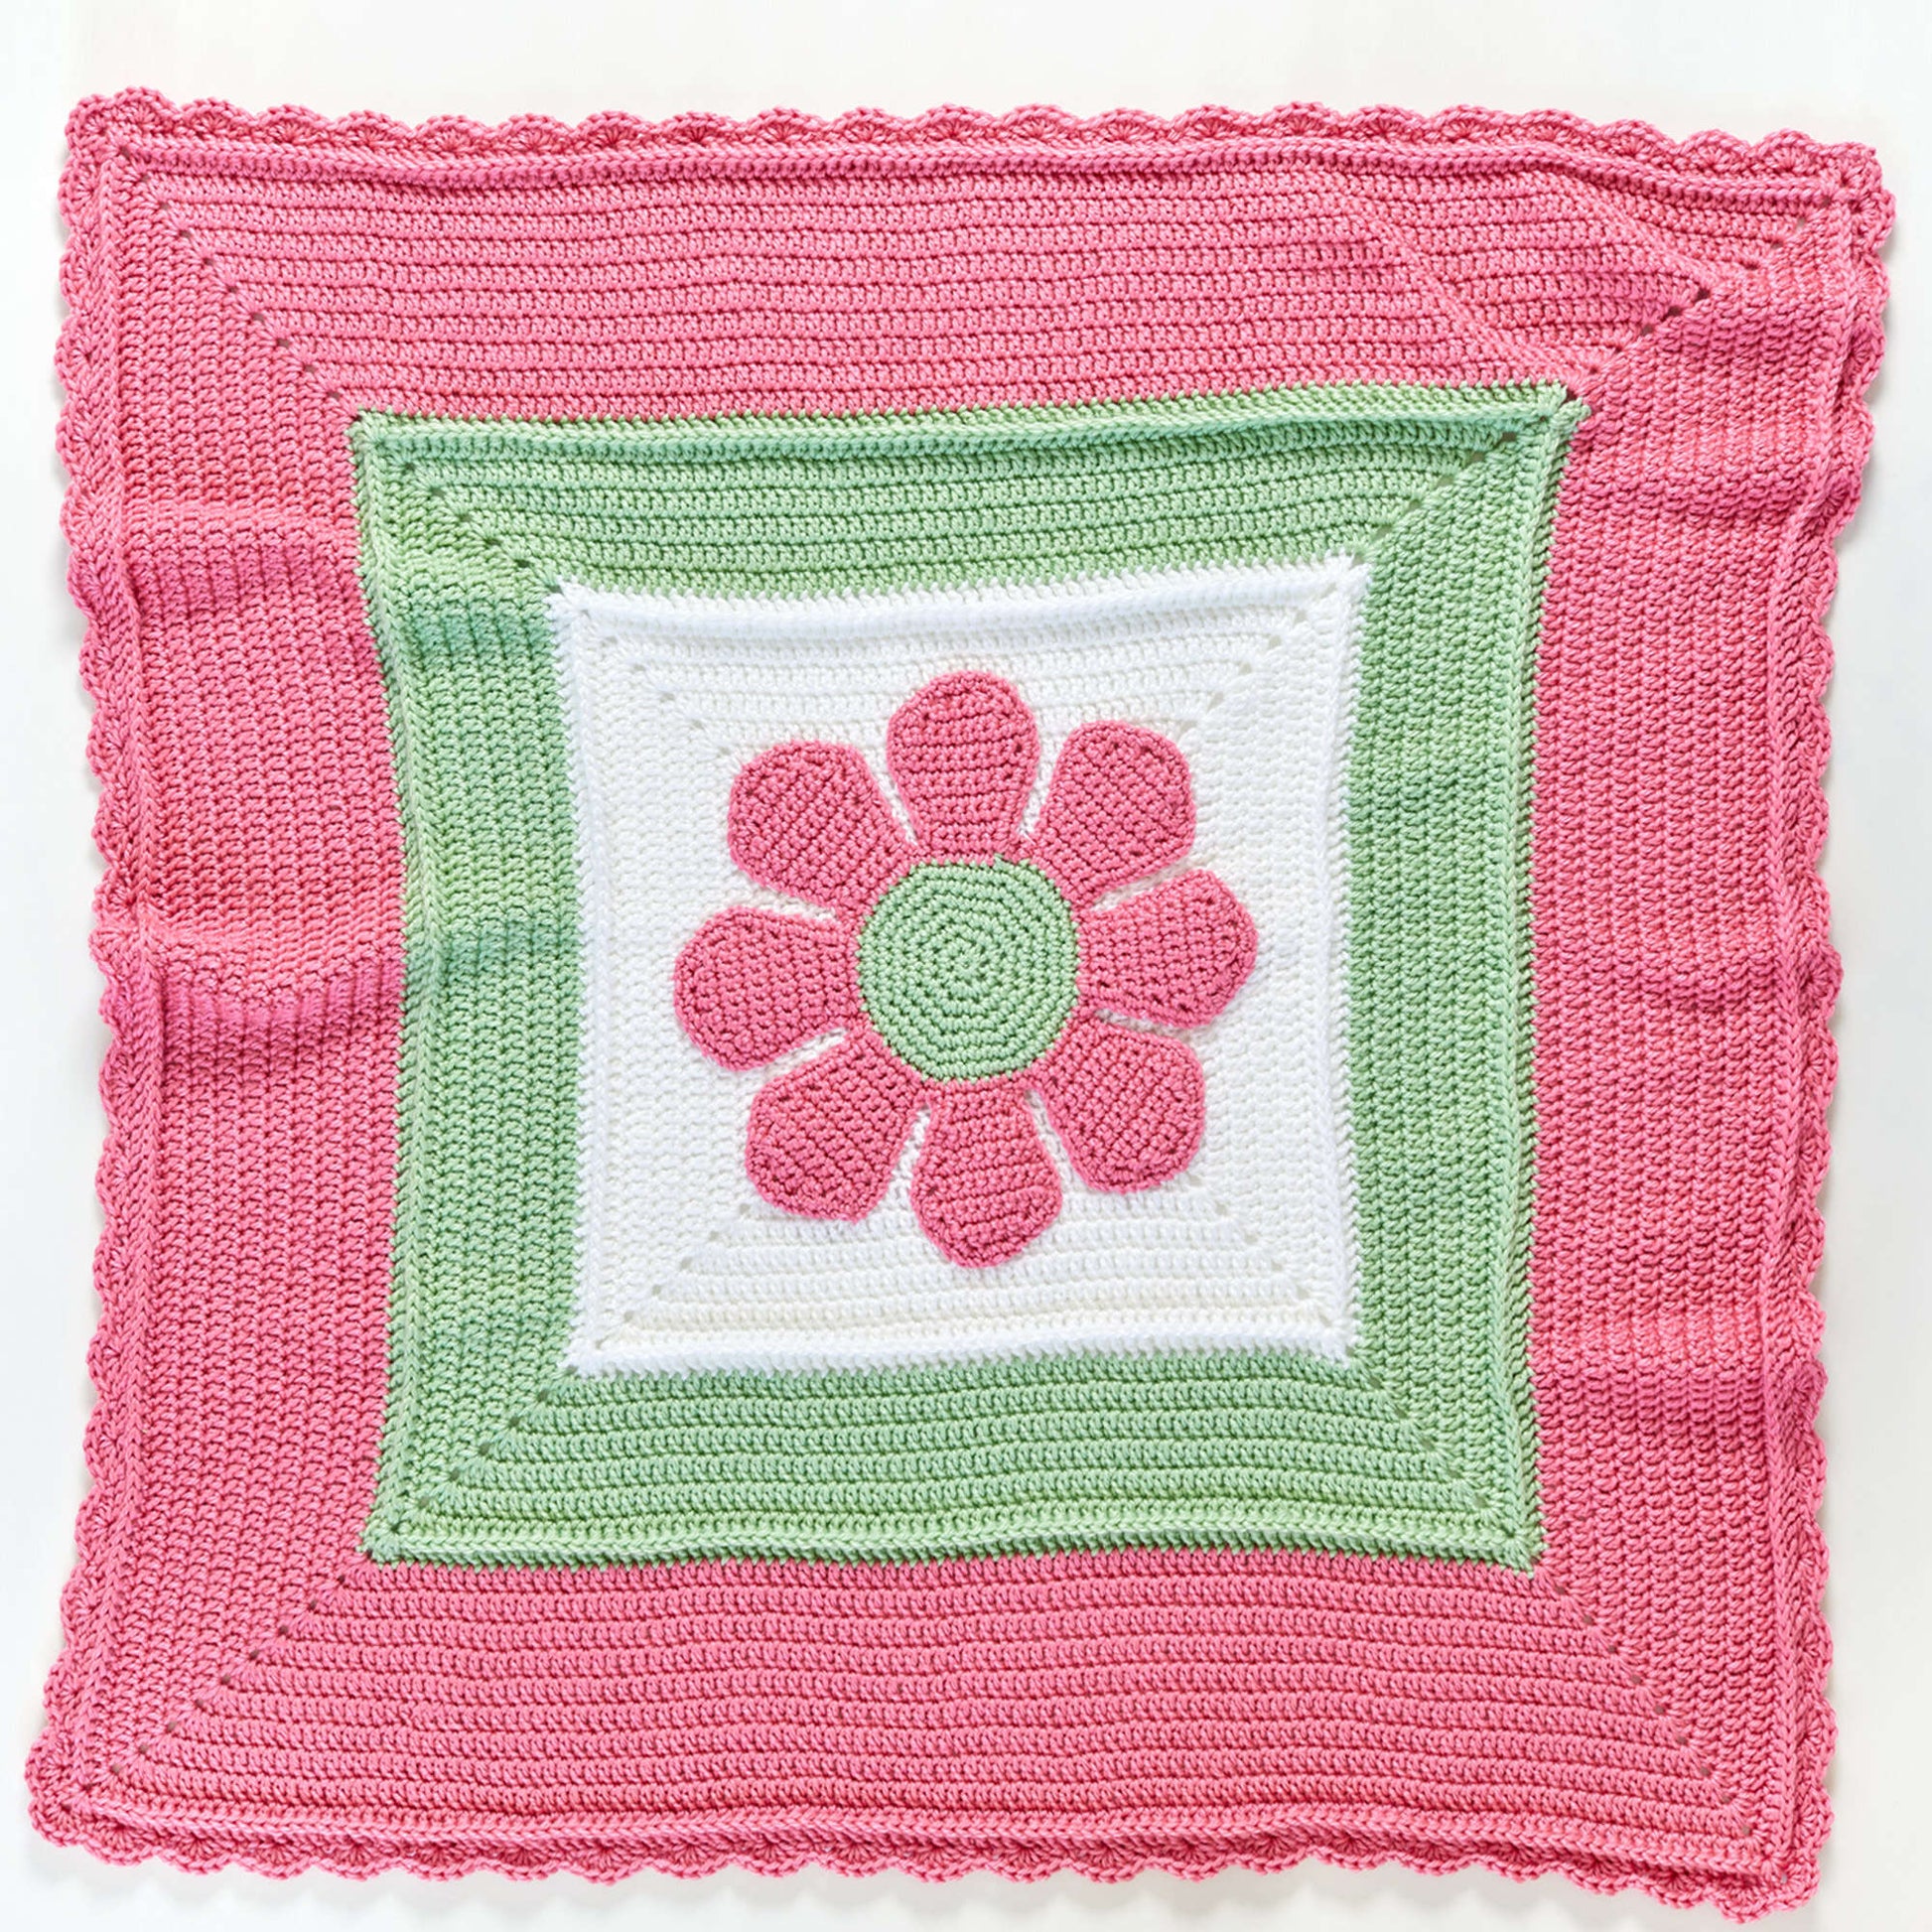 Free Red Heart In Full Bloom Crochet Baby Blanket Pattern